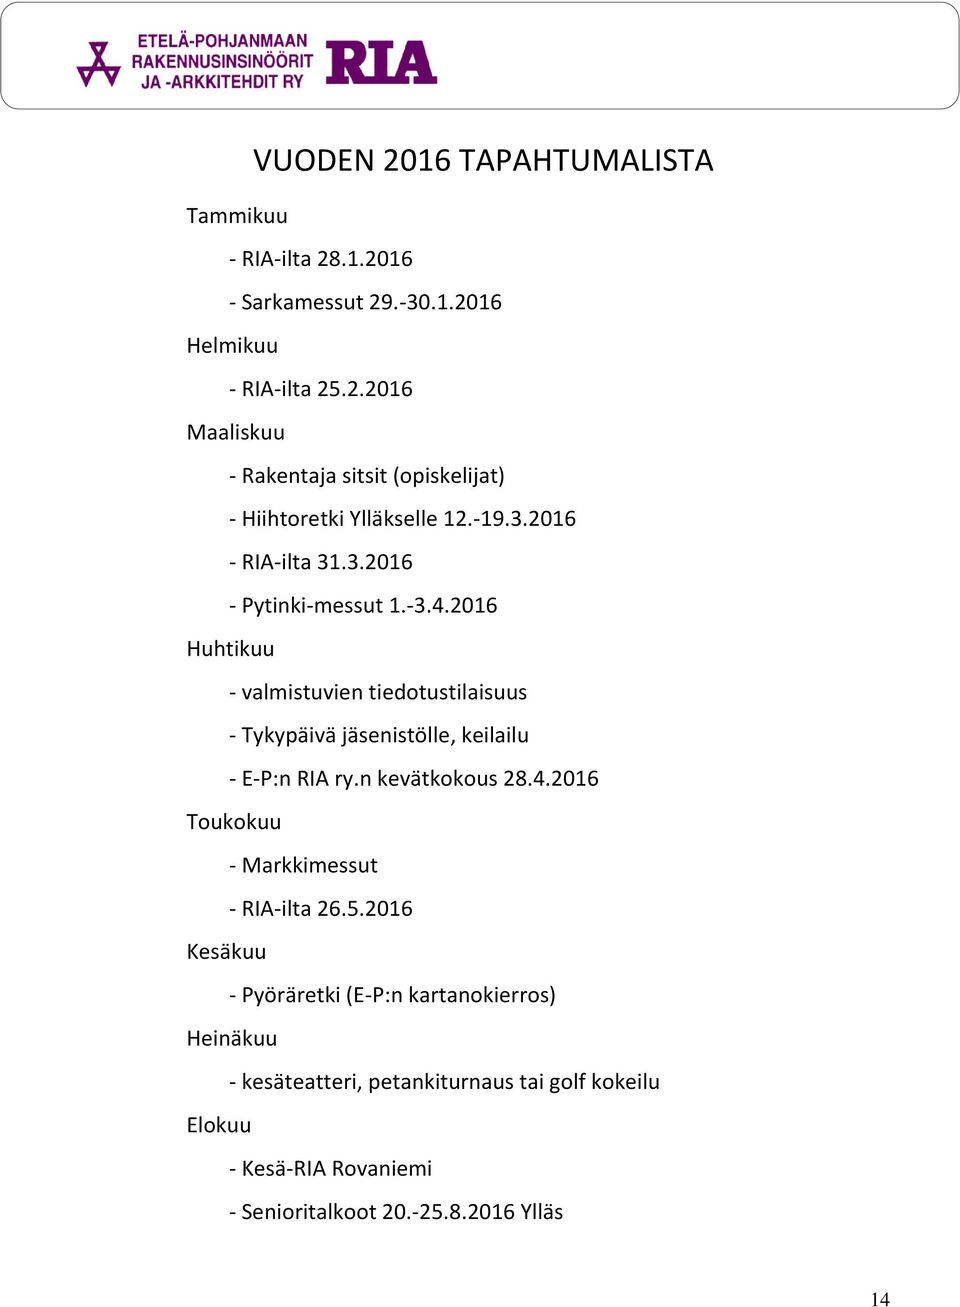 2016 Huhtikuu - valmistuvien tiedotustilaisuus - Tykypäivä jäsenistölle, keilailu - E-P:n RIA ry.n kevätkokous 28.4.